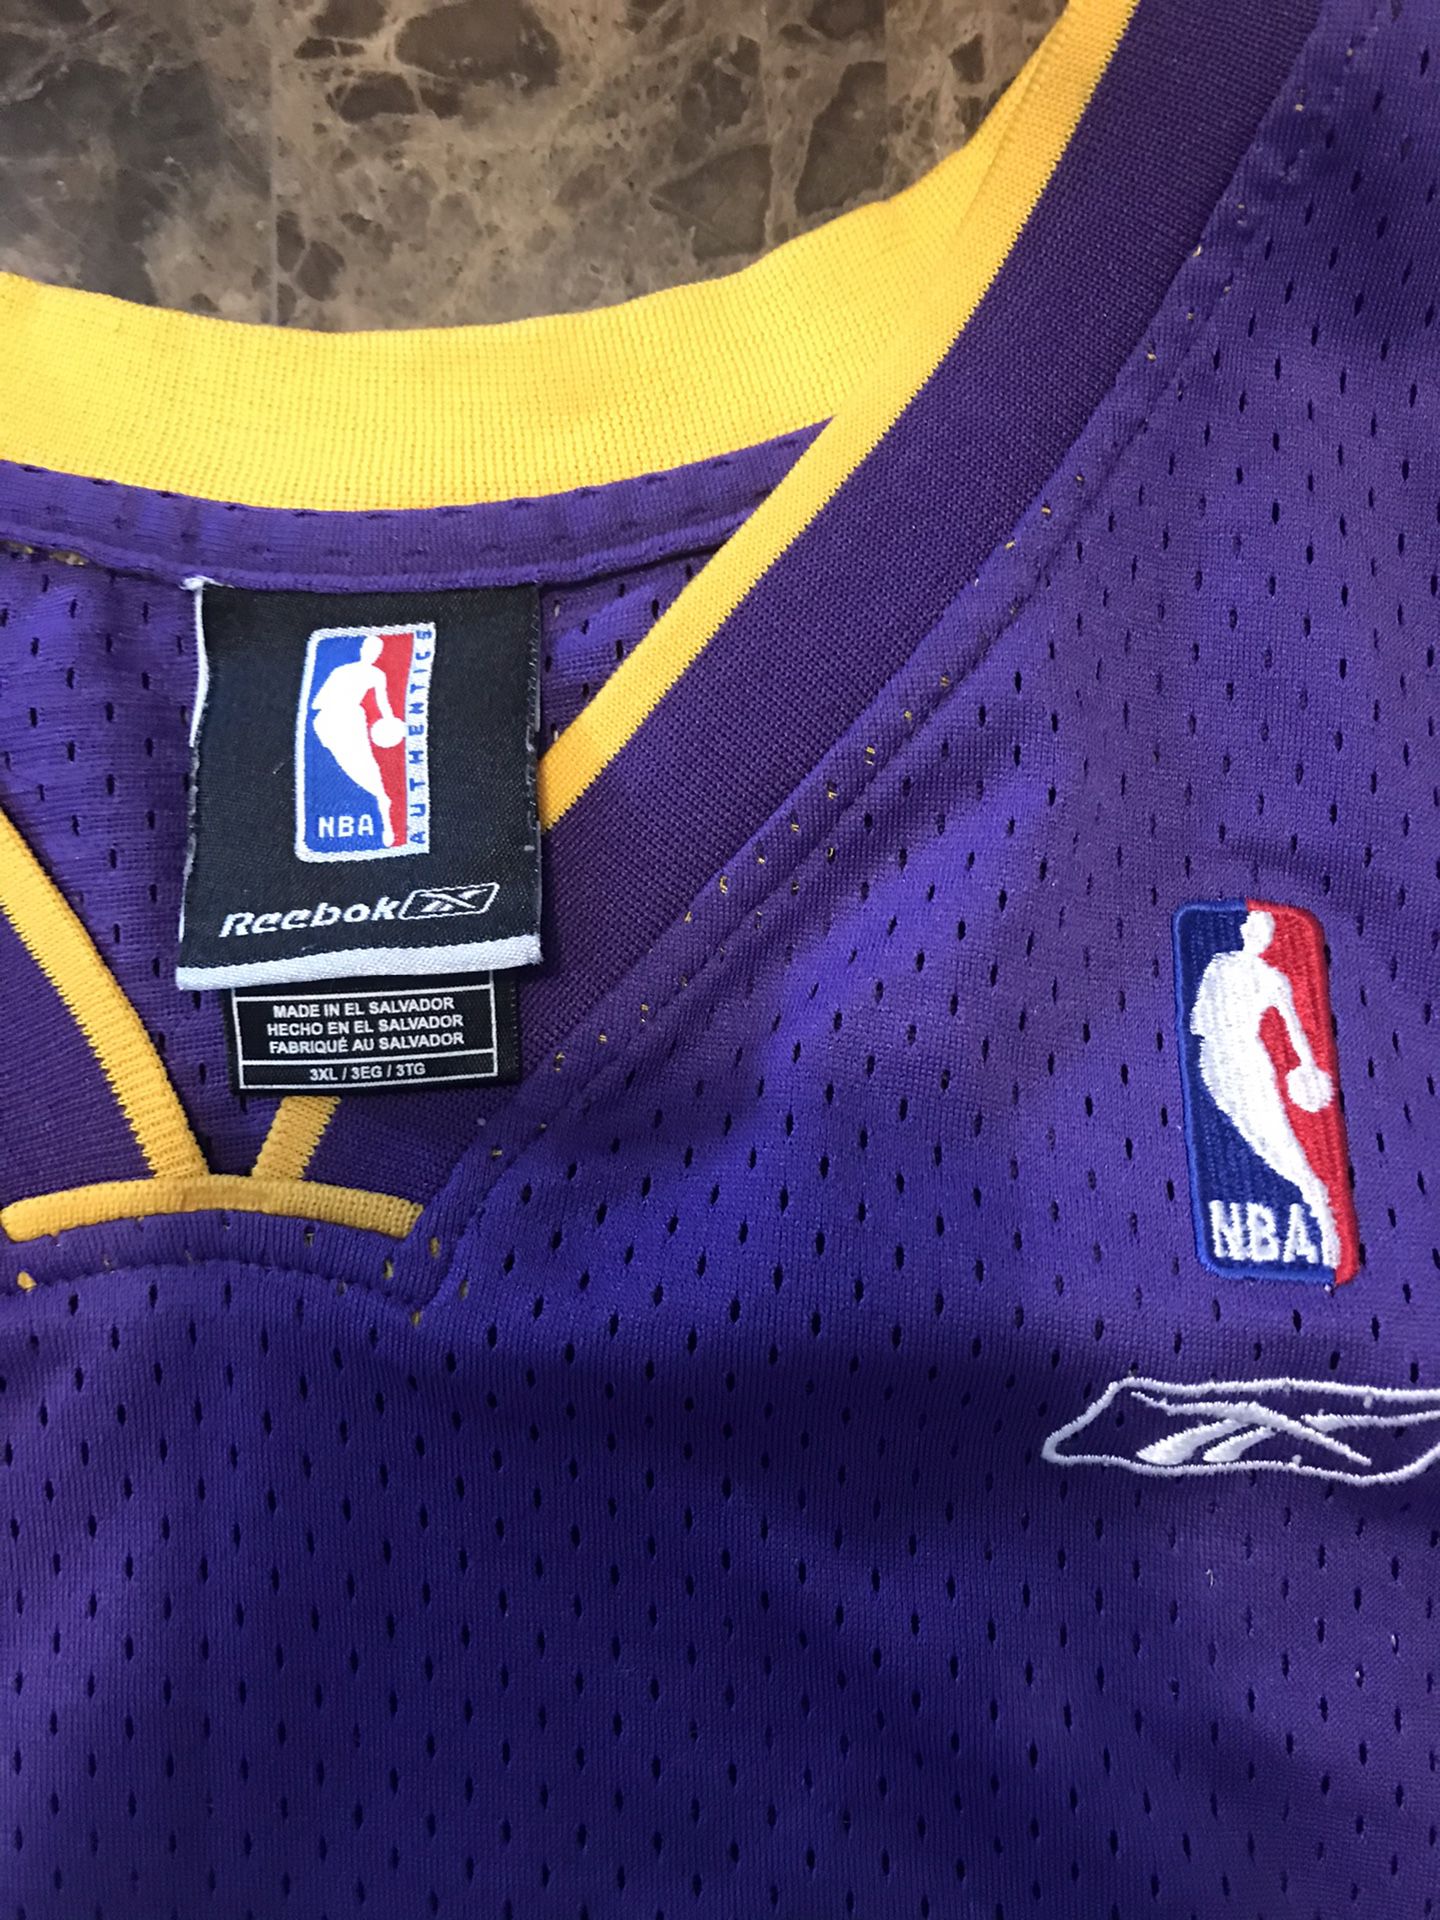 Minneapolis Lakers Gary Payton MPLS Hardwood Classics NBA Reebok Jersey  Size 2XL #payton #lakers #LosAngelesLakers